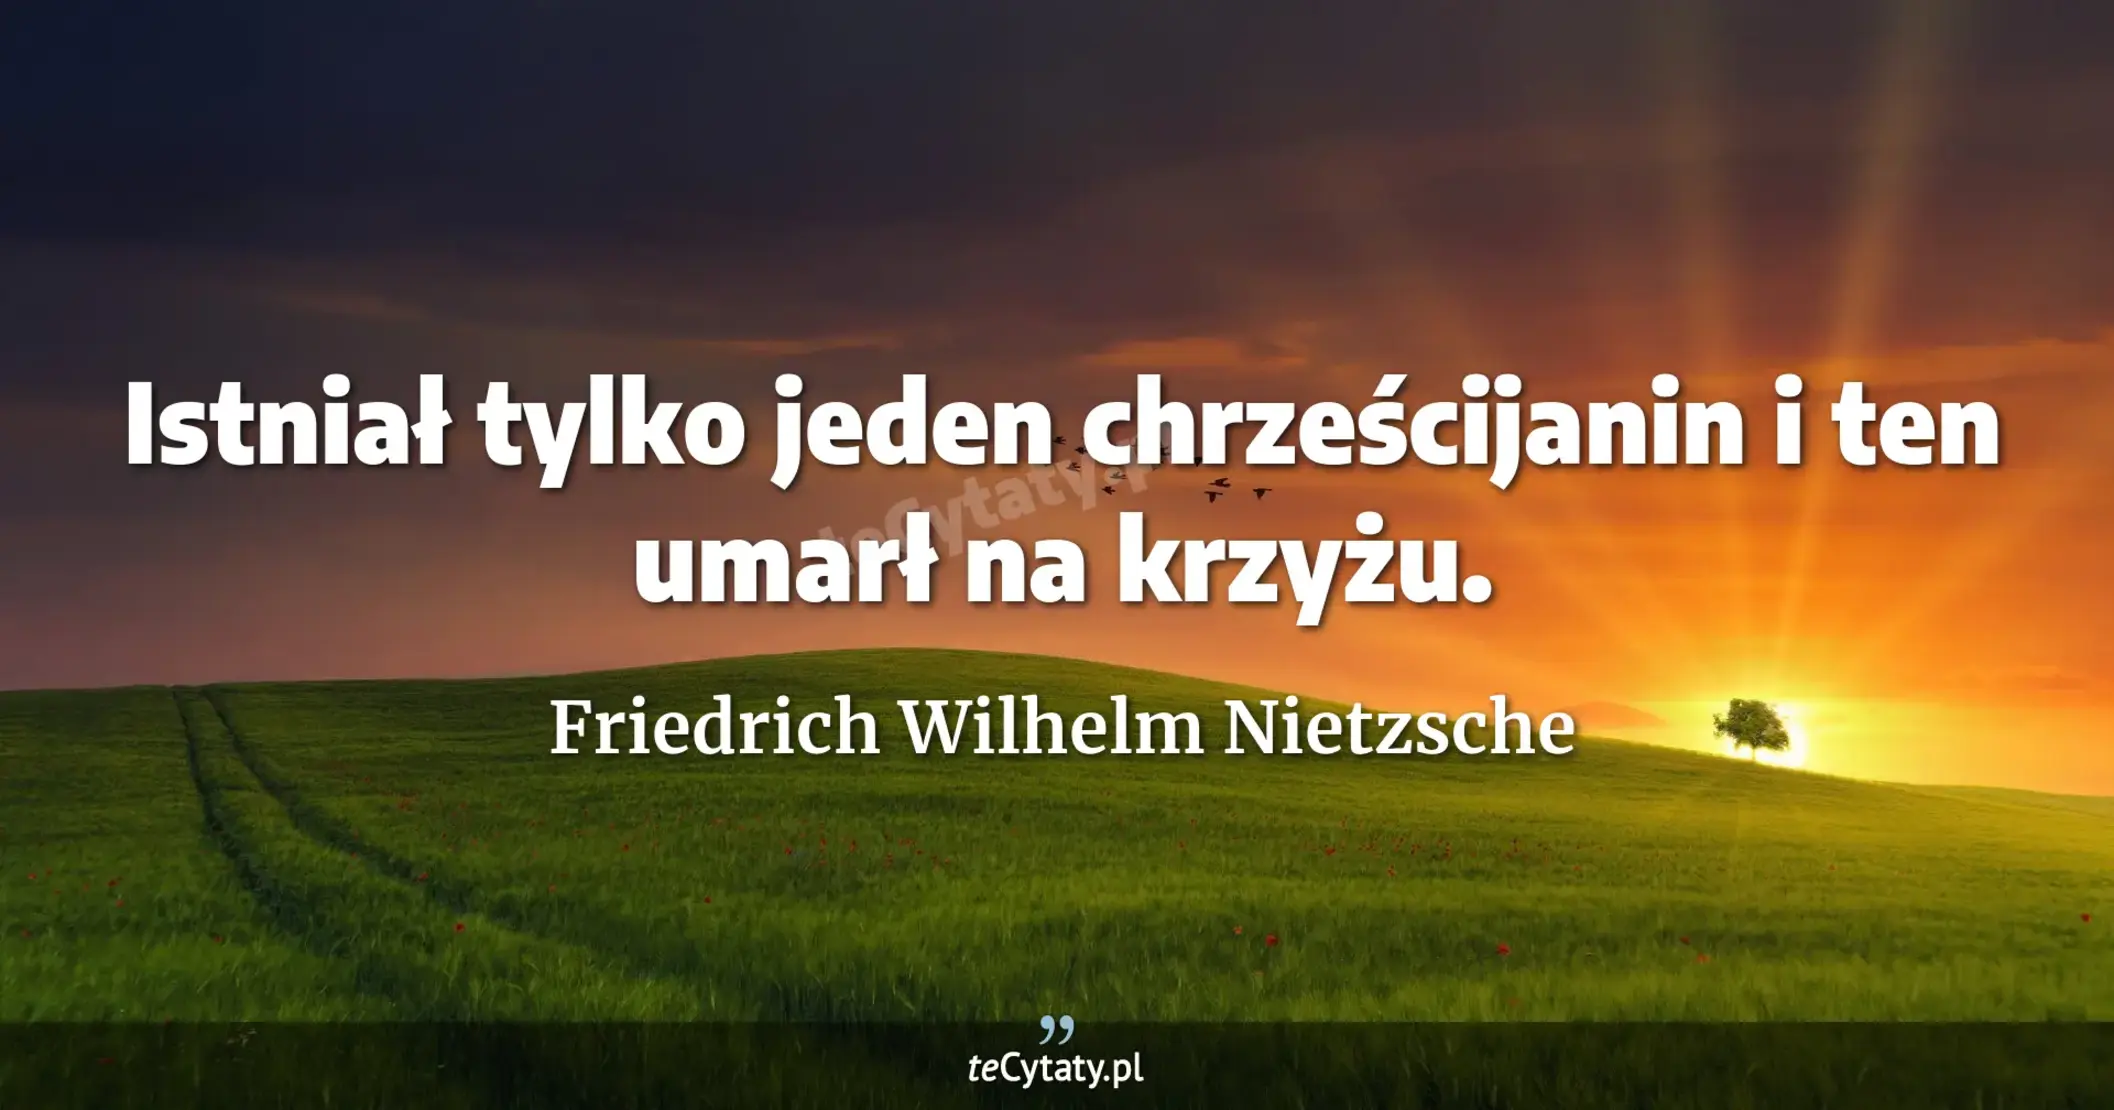 Istniał tylko jeden chrześcijanin i ten umarł na krzyżu. - Friedrich Wilhelm Nietzsche